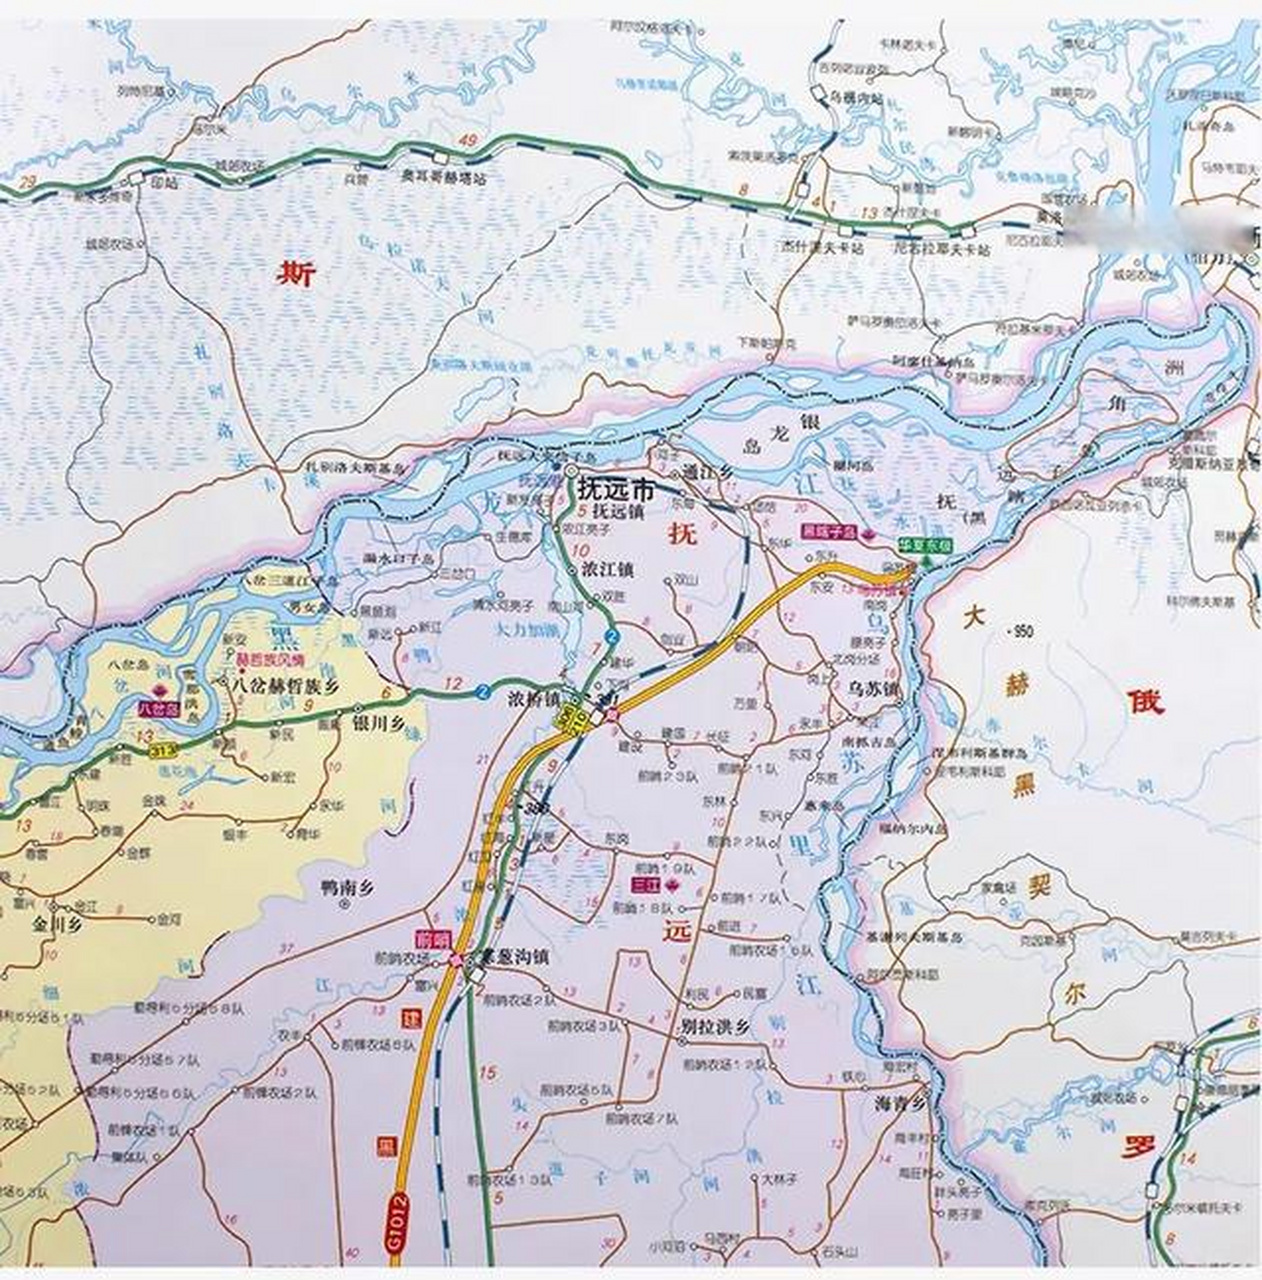 乌苏里江和黑龙江交汇处形成了抚远三角洲,也叫黑瞎子岛,这里一半属于